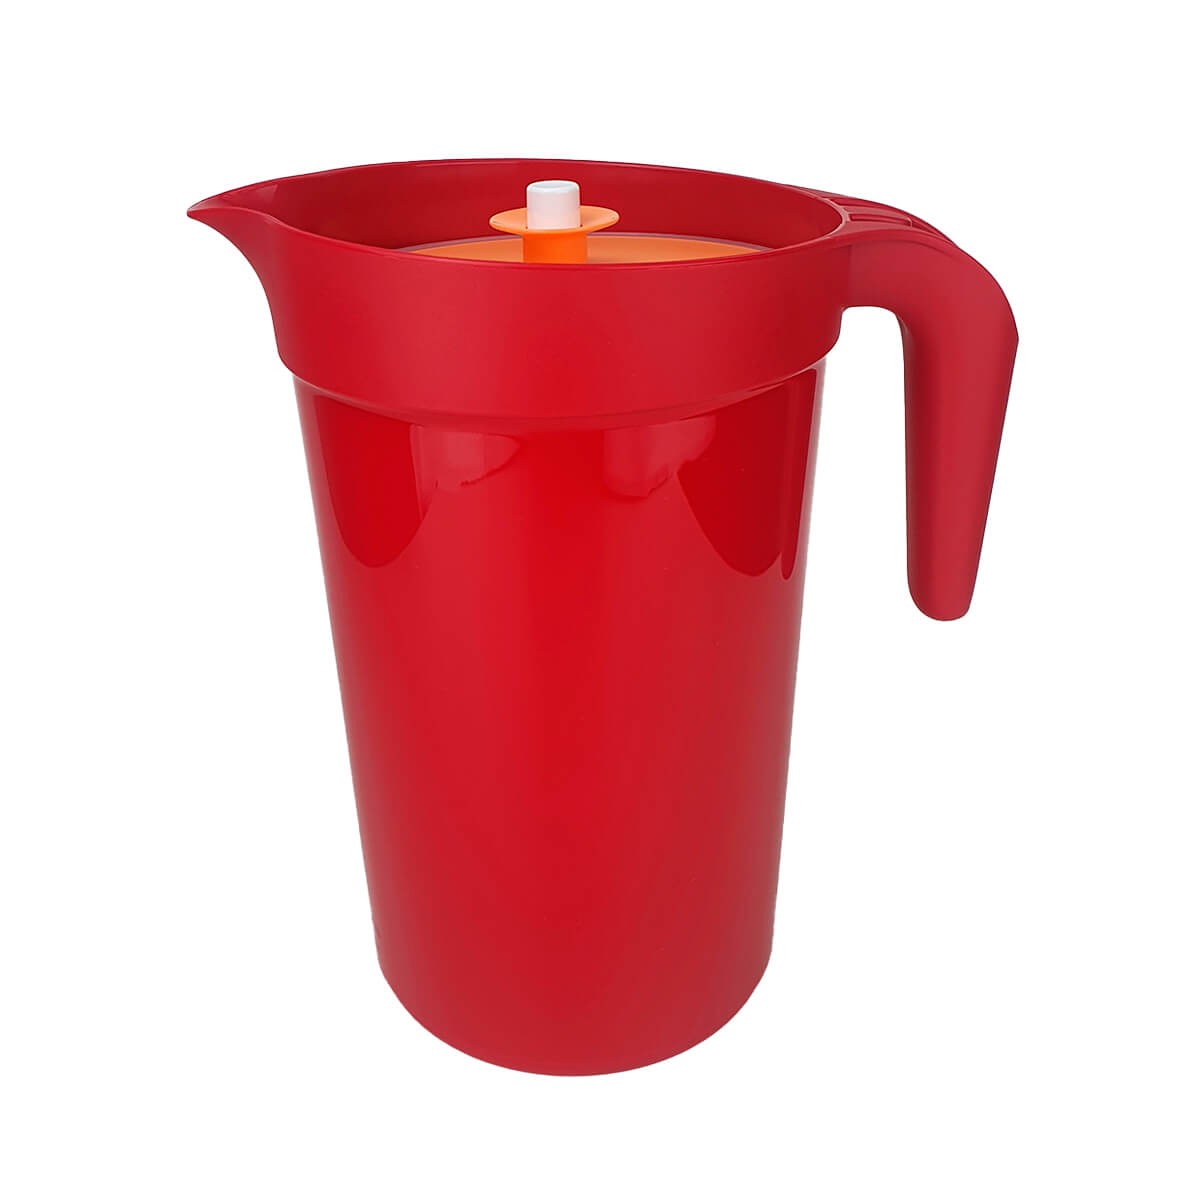 Tupperware Jarra Colors 3,8 litros Vermelha com tampa Laranja - Comprar  Tupperware Online? Wareshop - Loja Mundo Tupperware